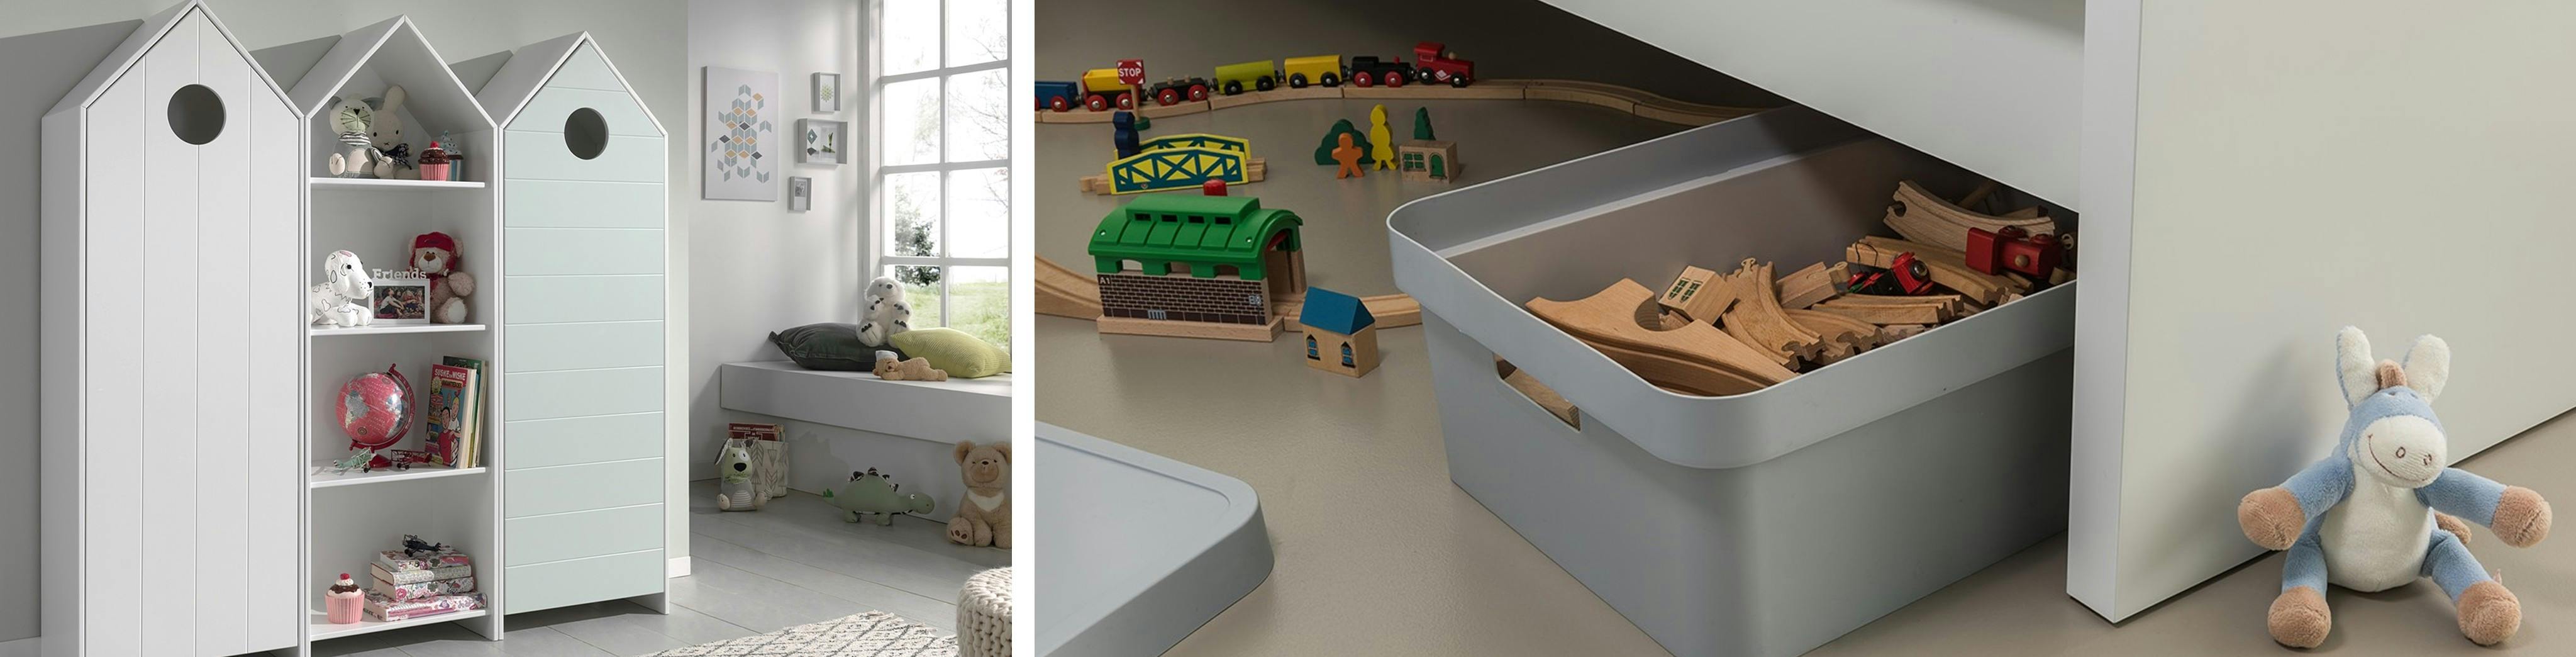 Kasten in de vorm van een huis, speelgoed en knuffels, houten spoorbaan, opbergbox onder het bed, knuffelezel